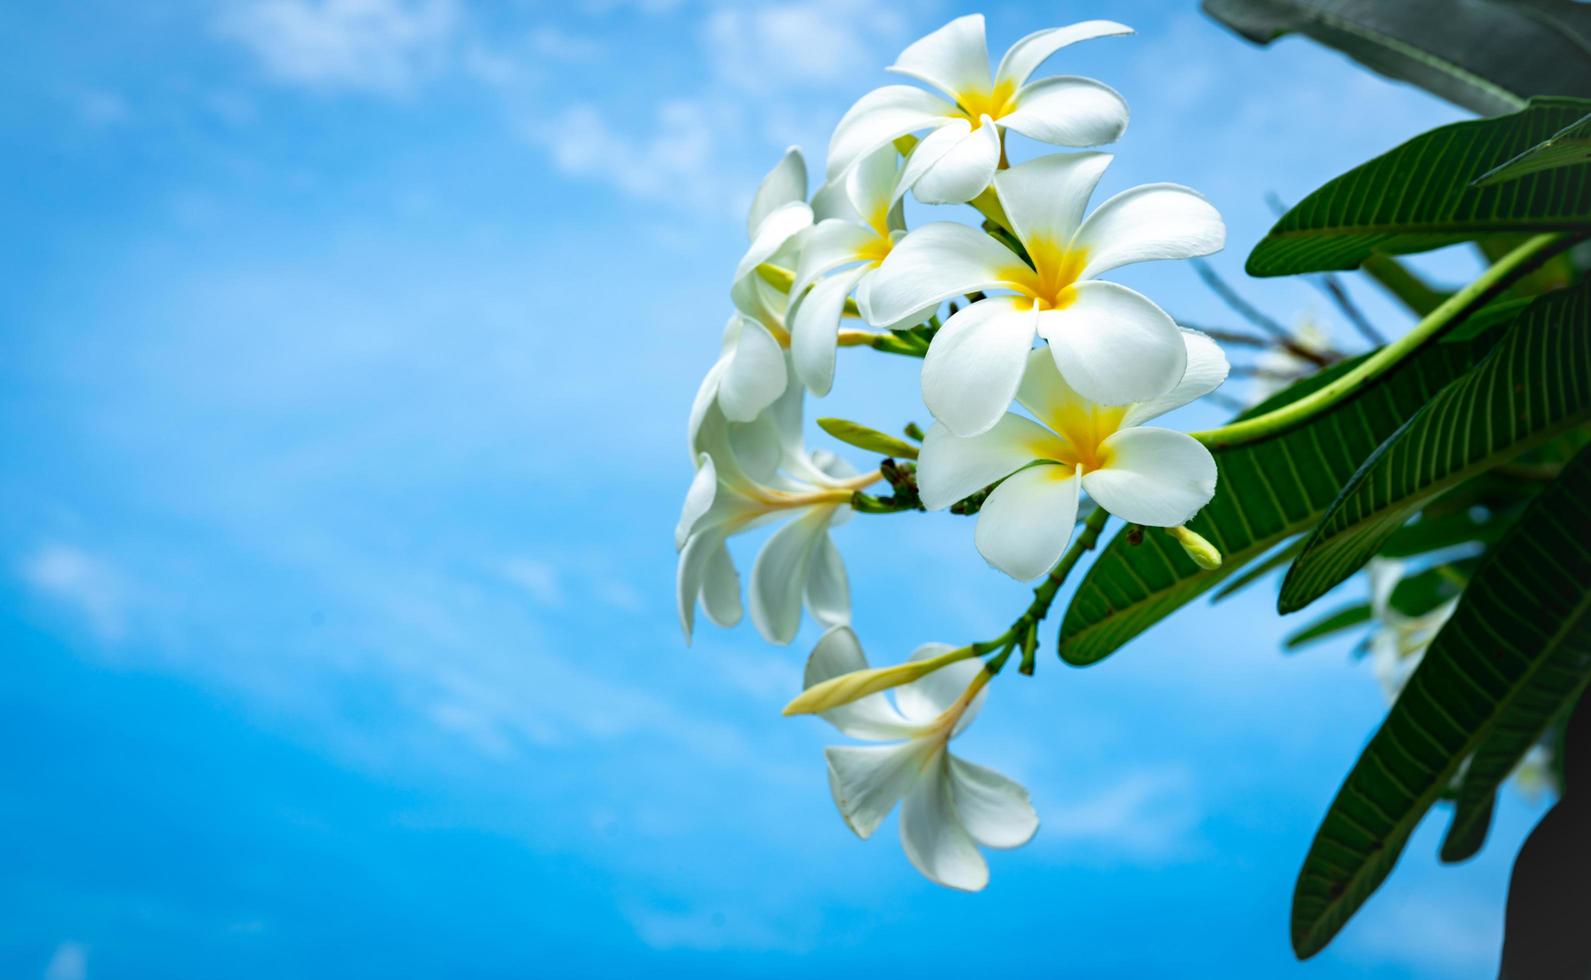 flor de frangipani plumeria alba con hojas verdes sobre fondo de cielo azul. flores blancas con amarillo en el centro. antecedentes de salud y spa. concepto de spa de verano. relaja la emoción. flor blanca floreciendo. foto